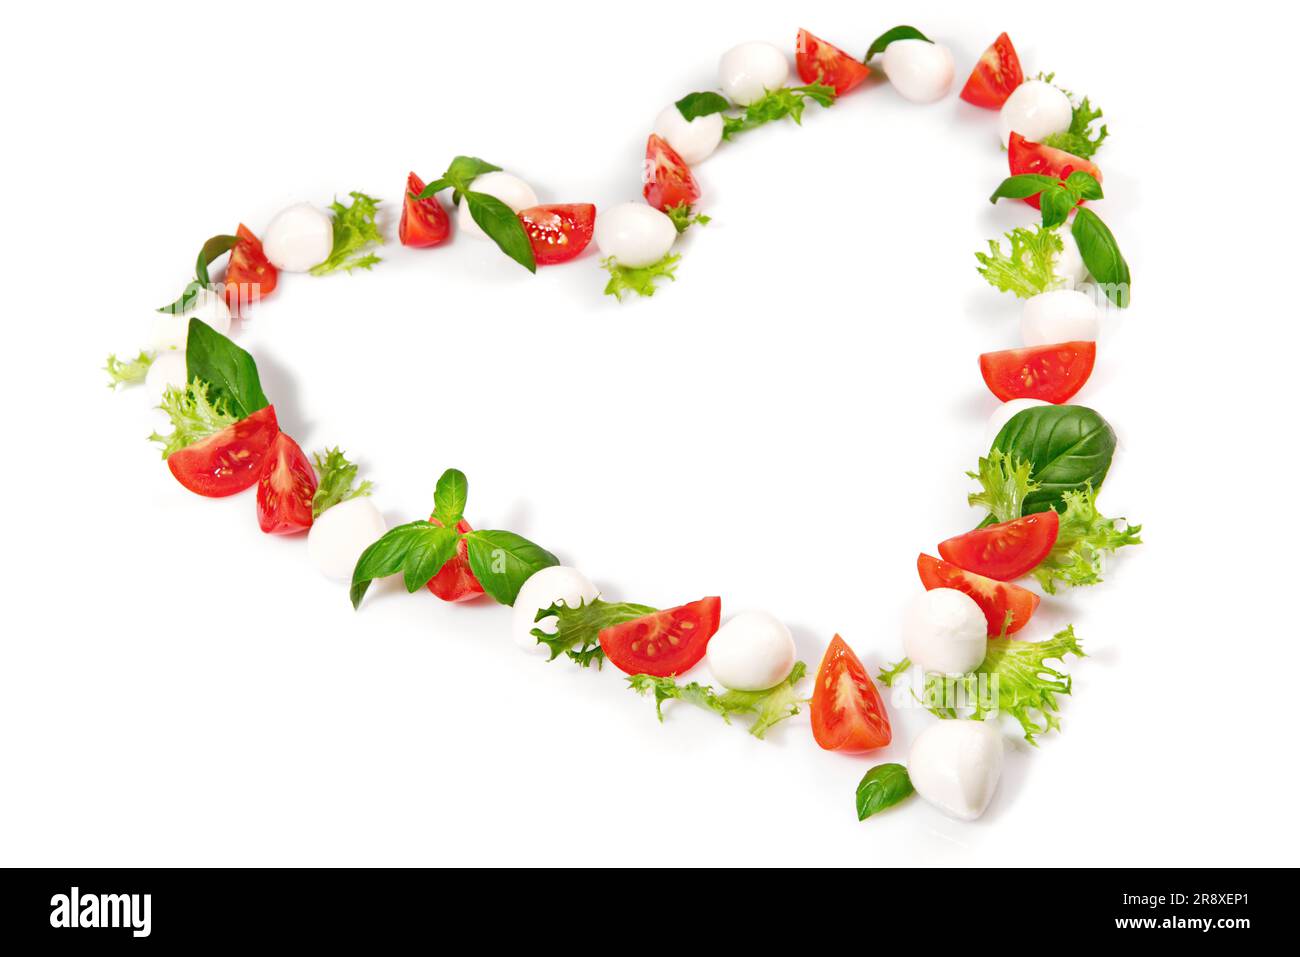 Tomato Mozzarella Heart Shape with Basil isolated on white Background Stock Photo